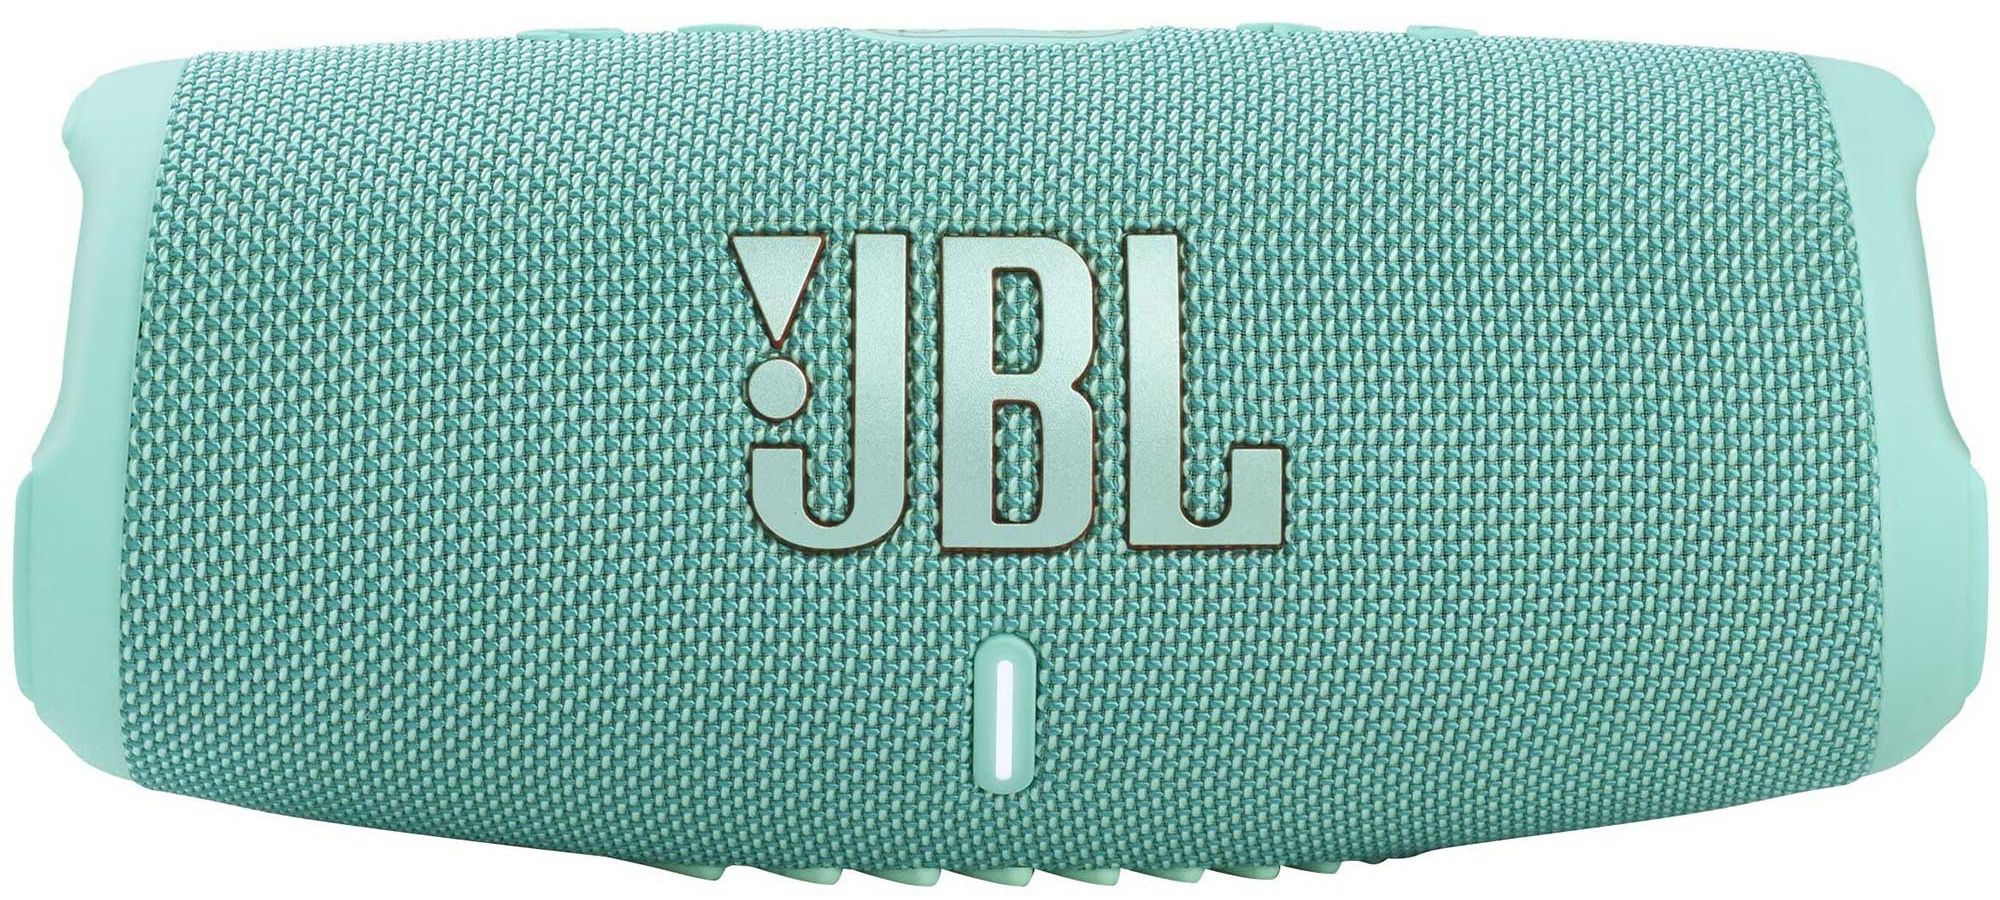 Портативная акустика JBL Charge 5 Teal портативная акустика jbl charge 3 jblcharge3tealeu blue